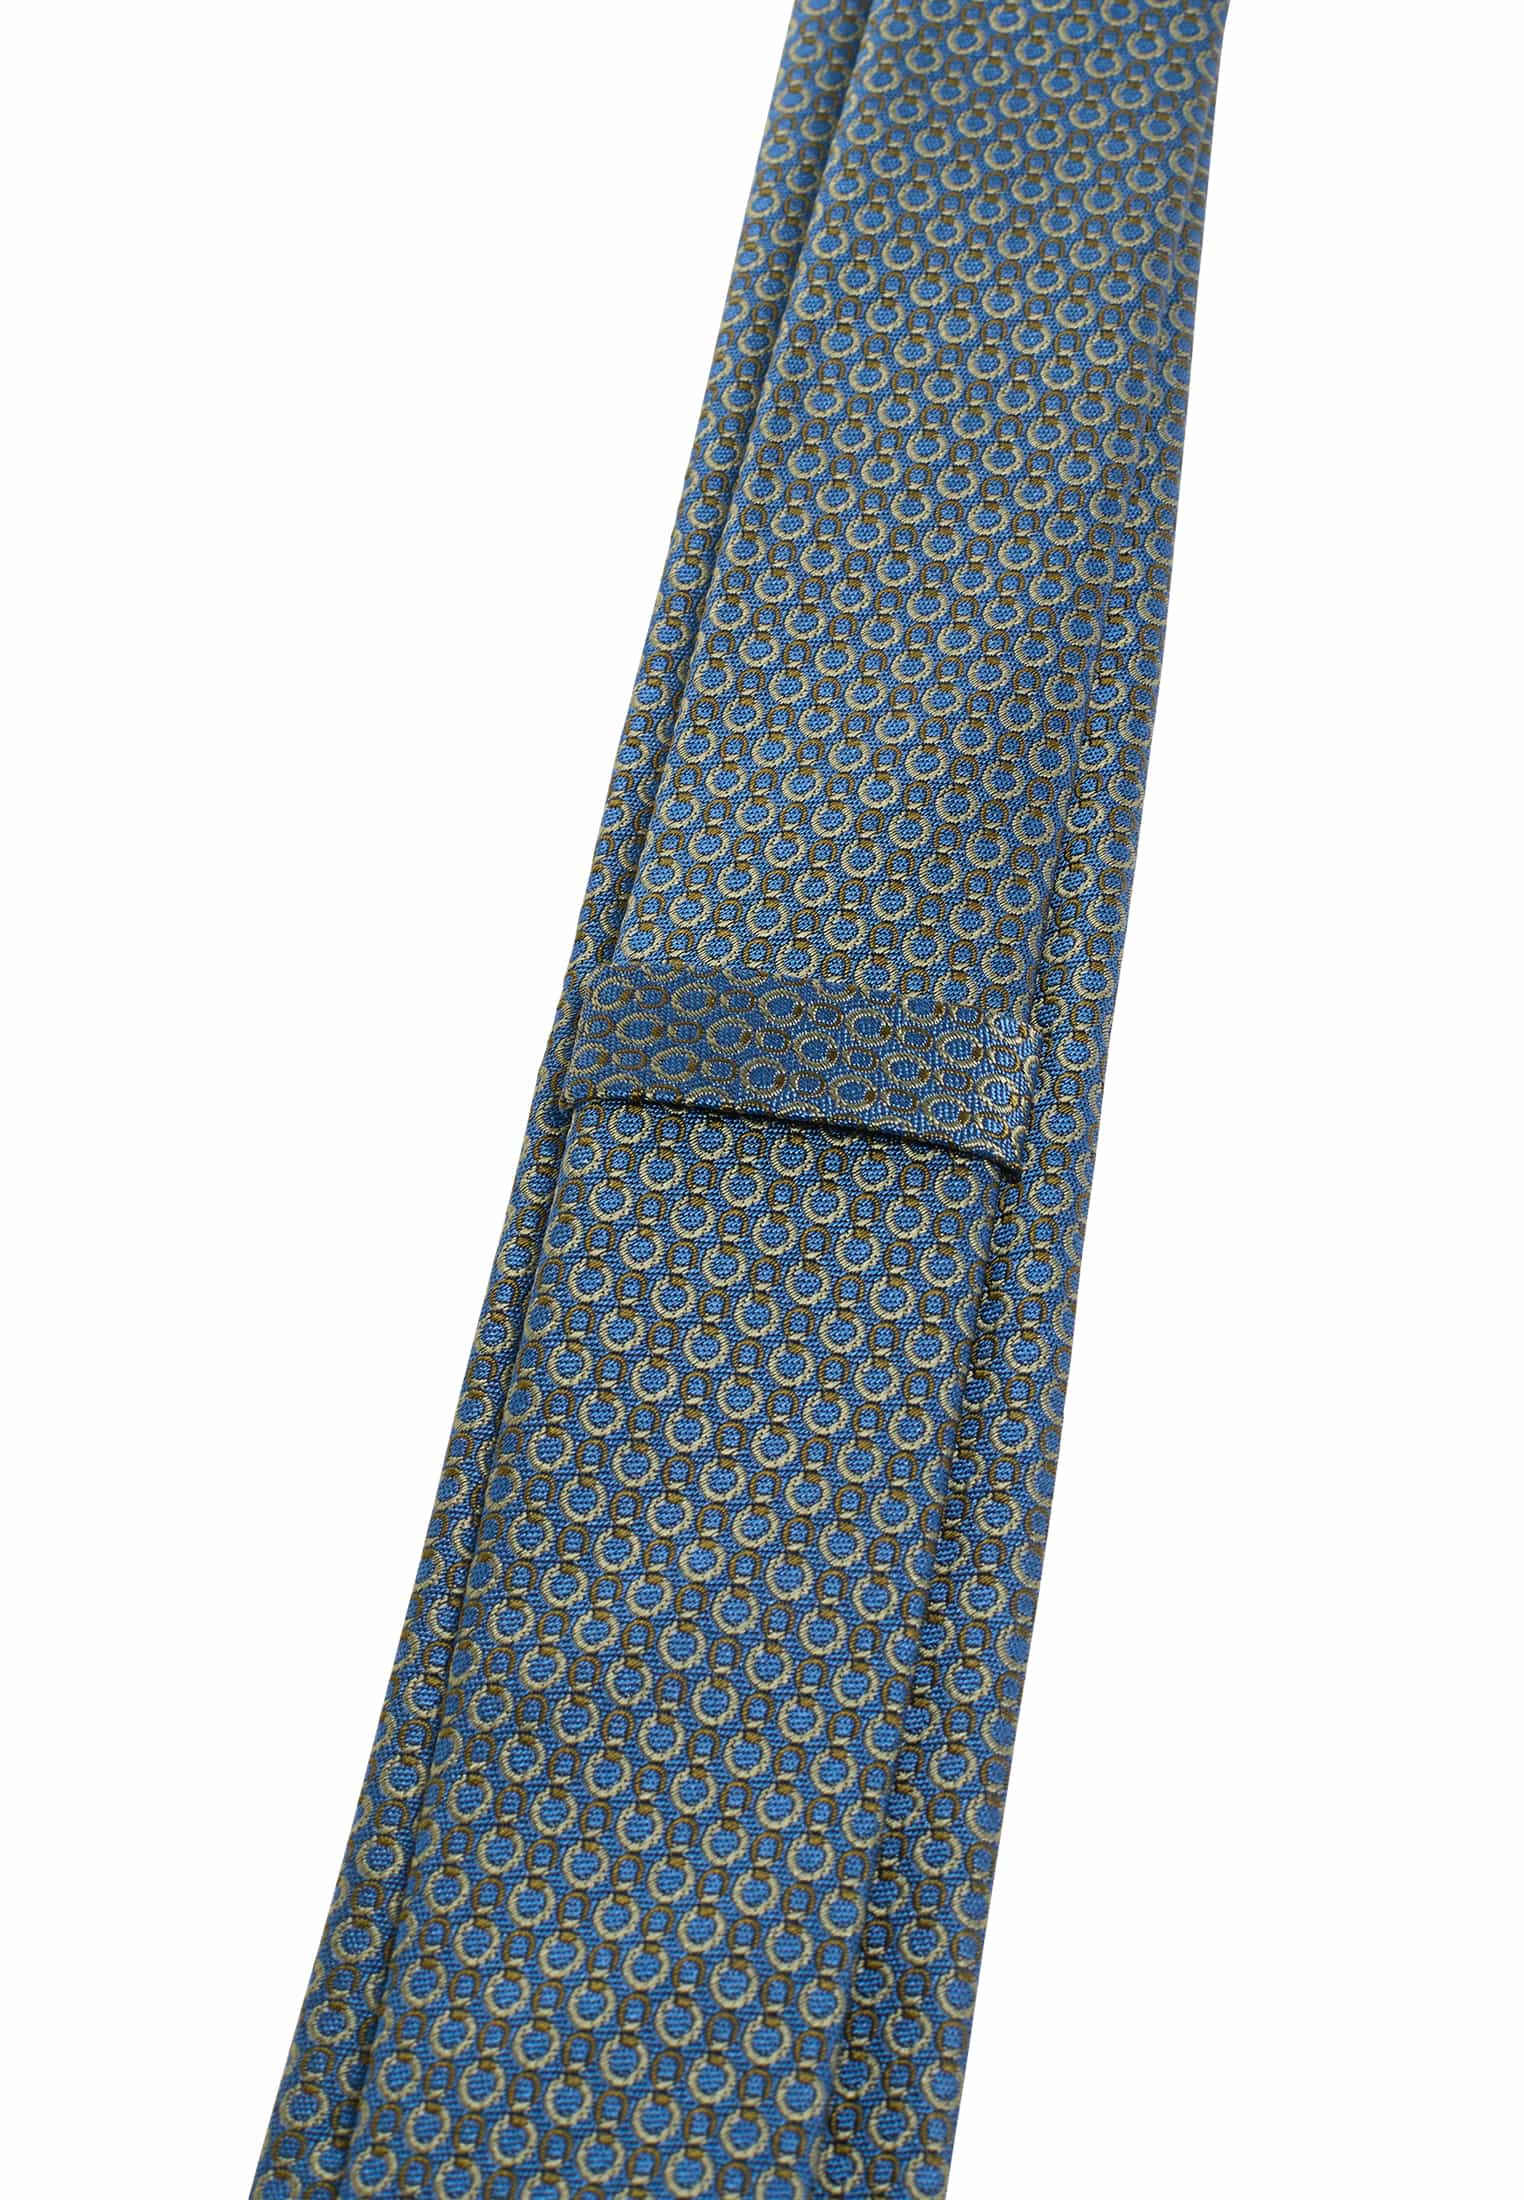 Krawatte in blau/grün | 1AC01948-81-48-142 blau/grün strukturiert 142 | 